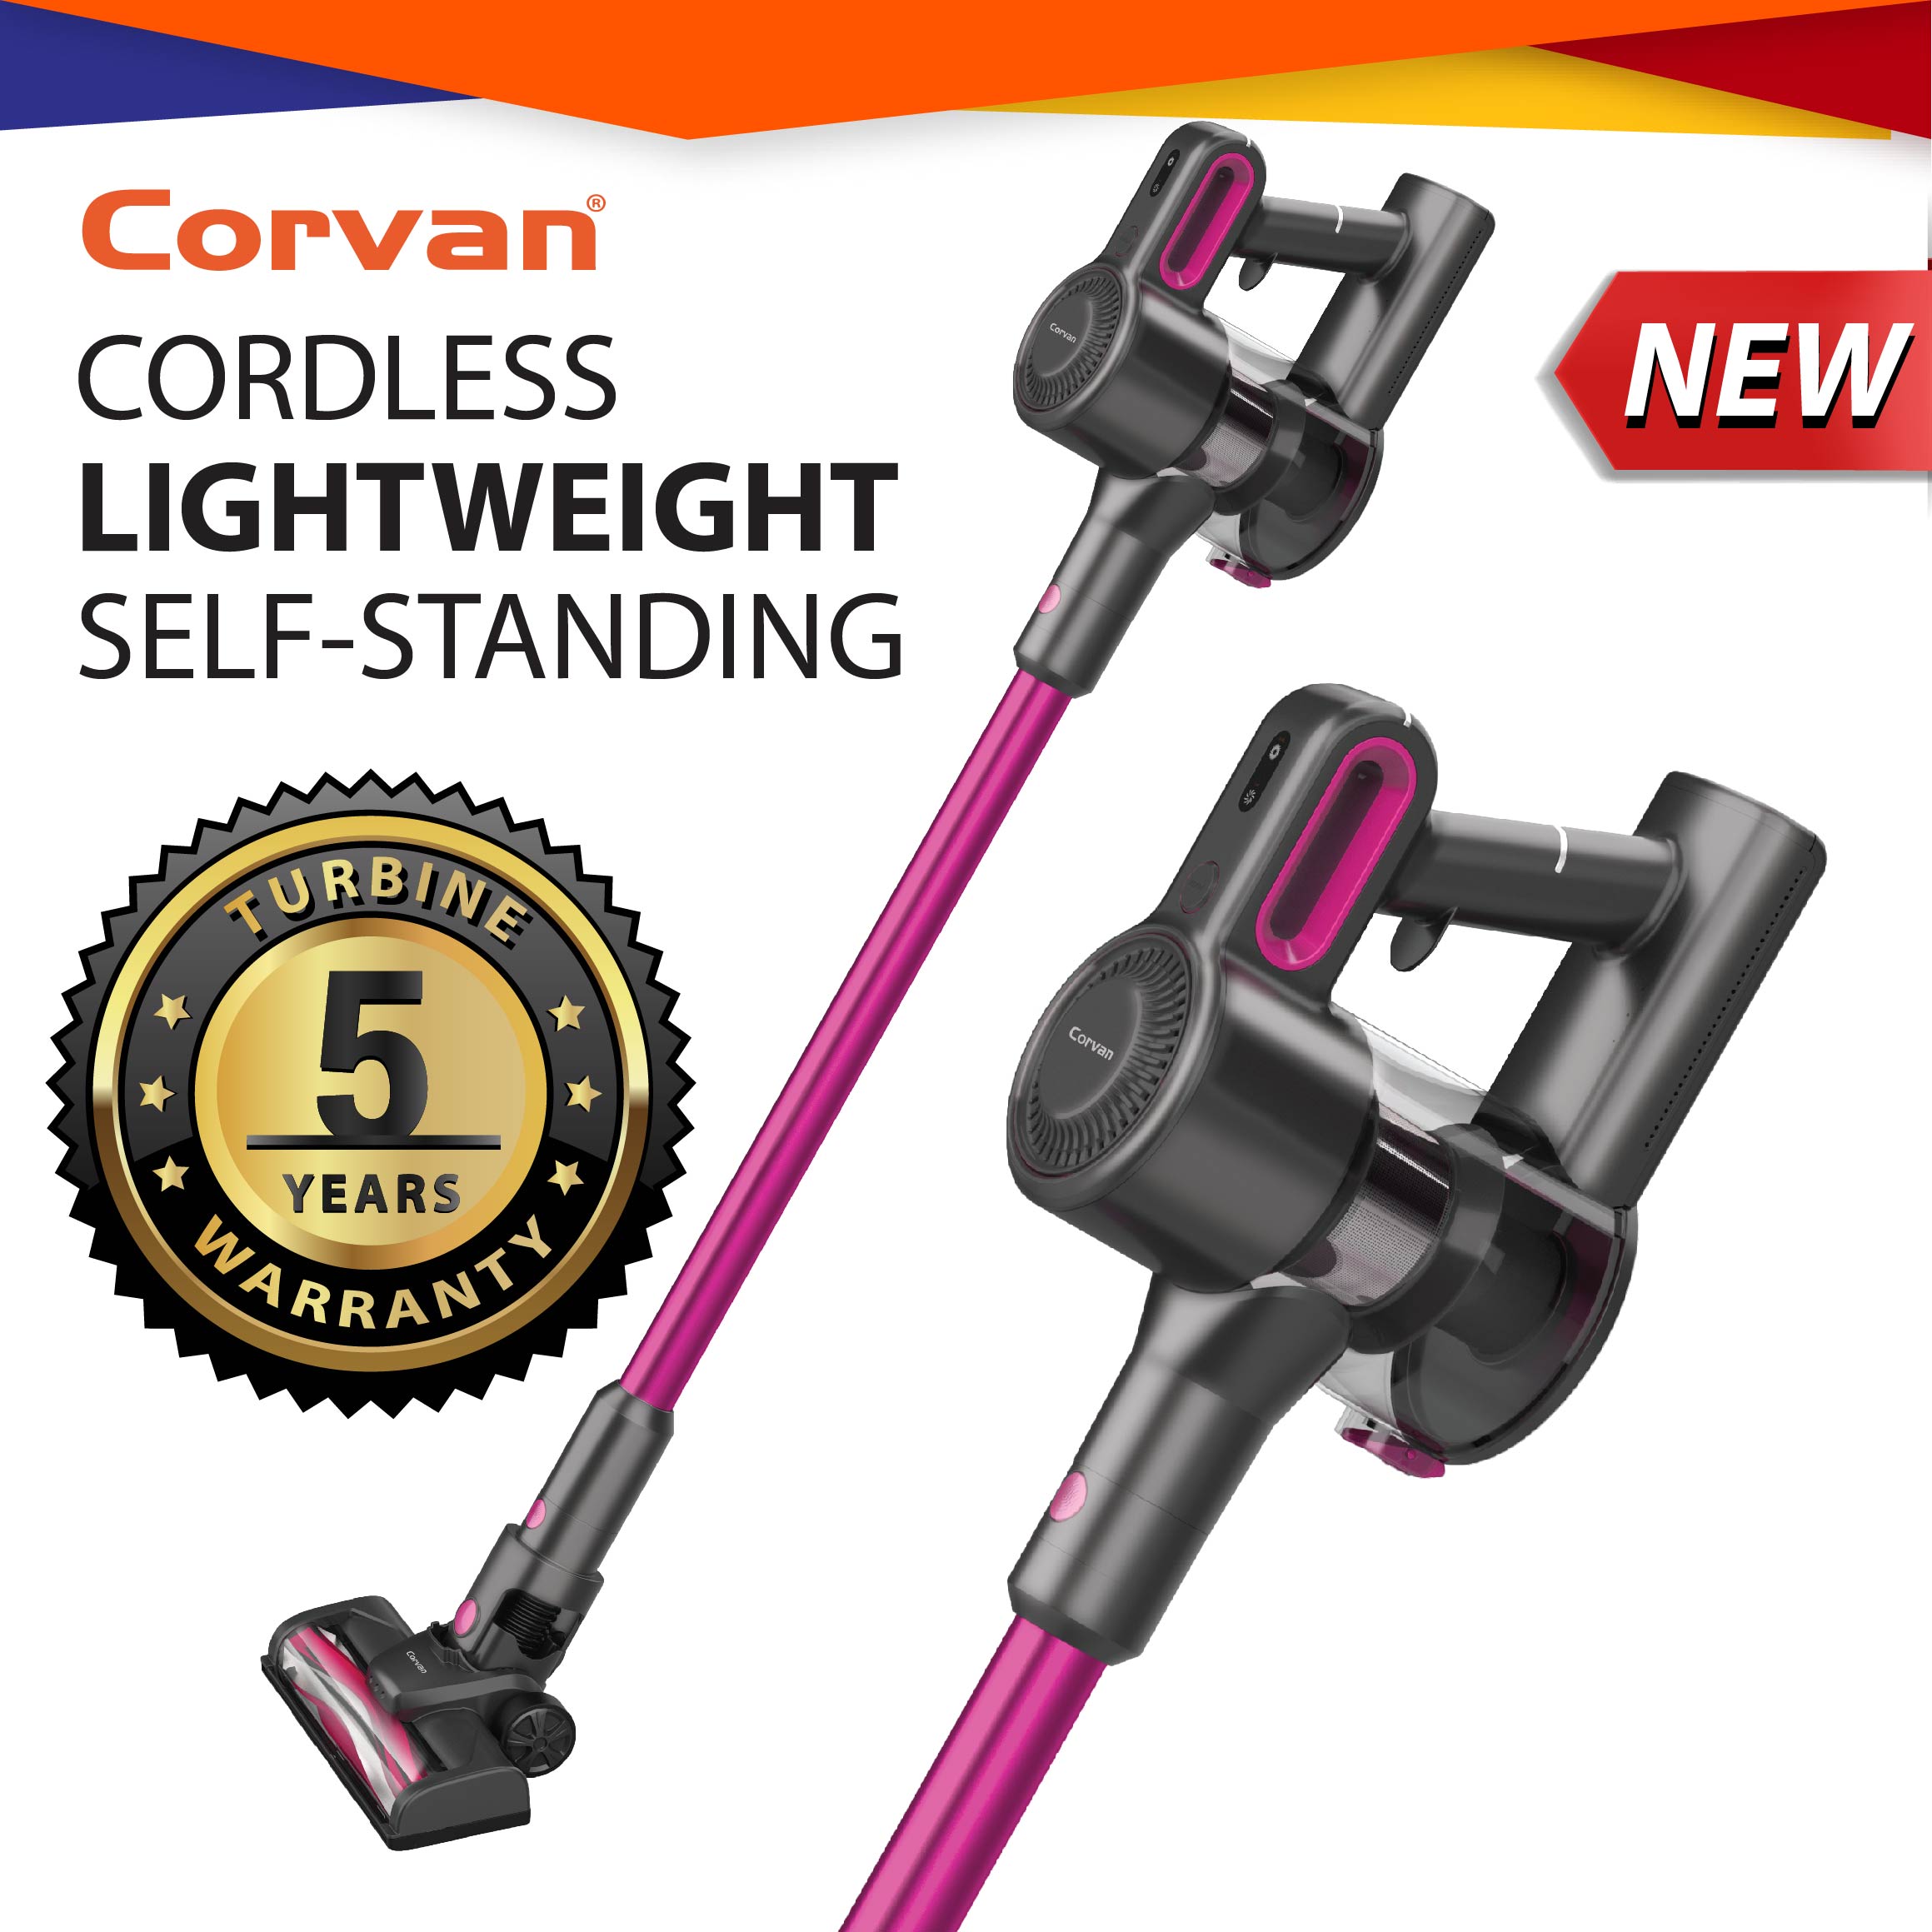 Corvan cordless vacuum review